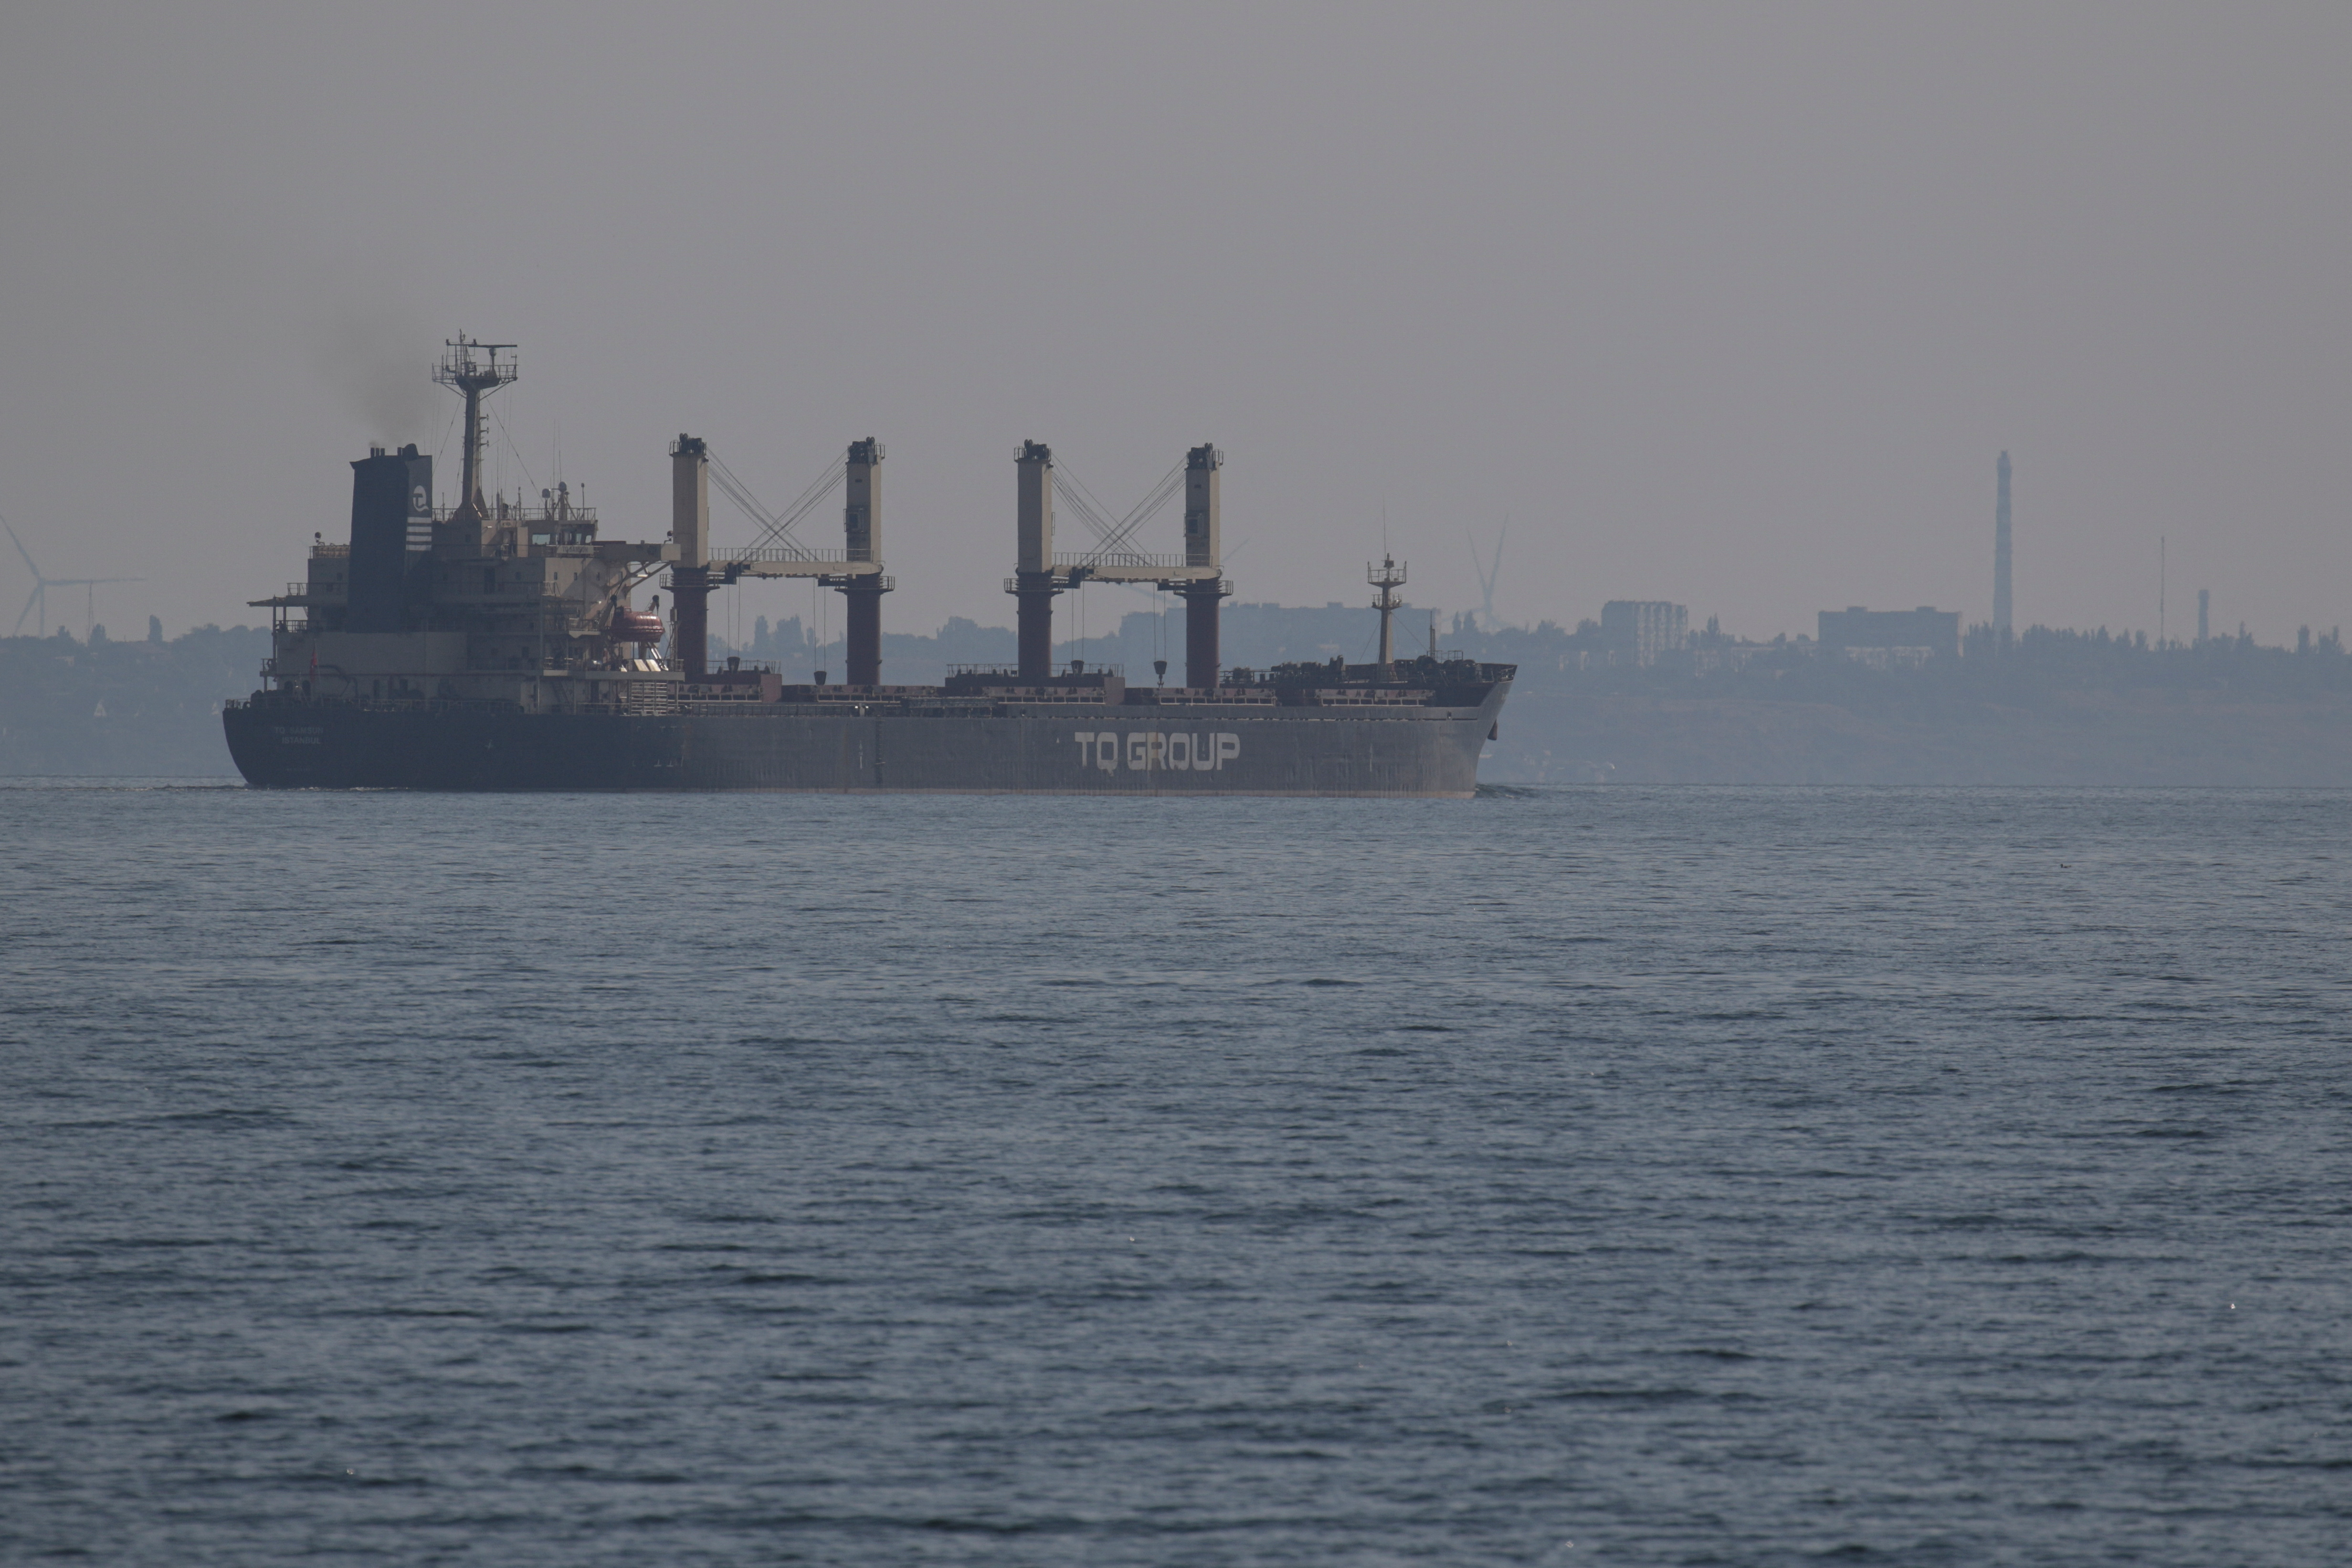 El granelero con bandera turca Tq Samsun sale del puerto marítimo de Odesa